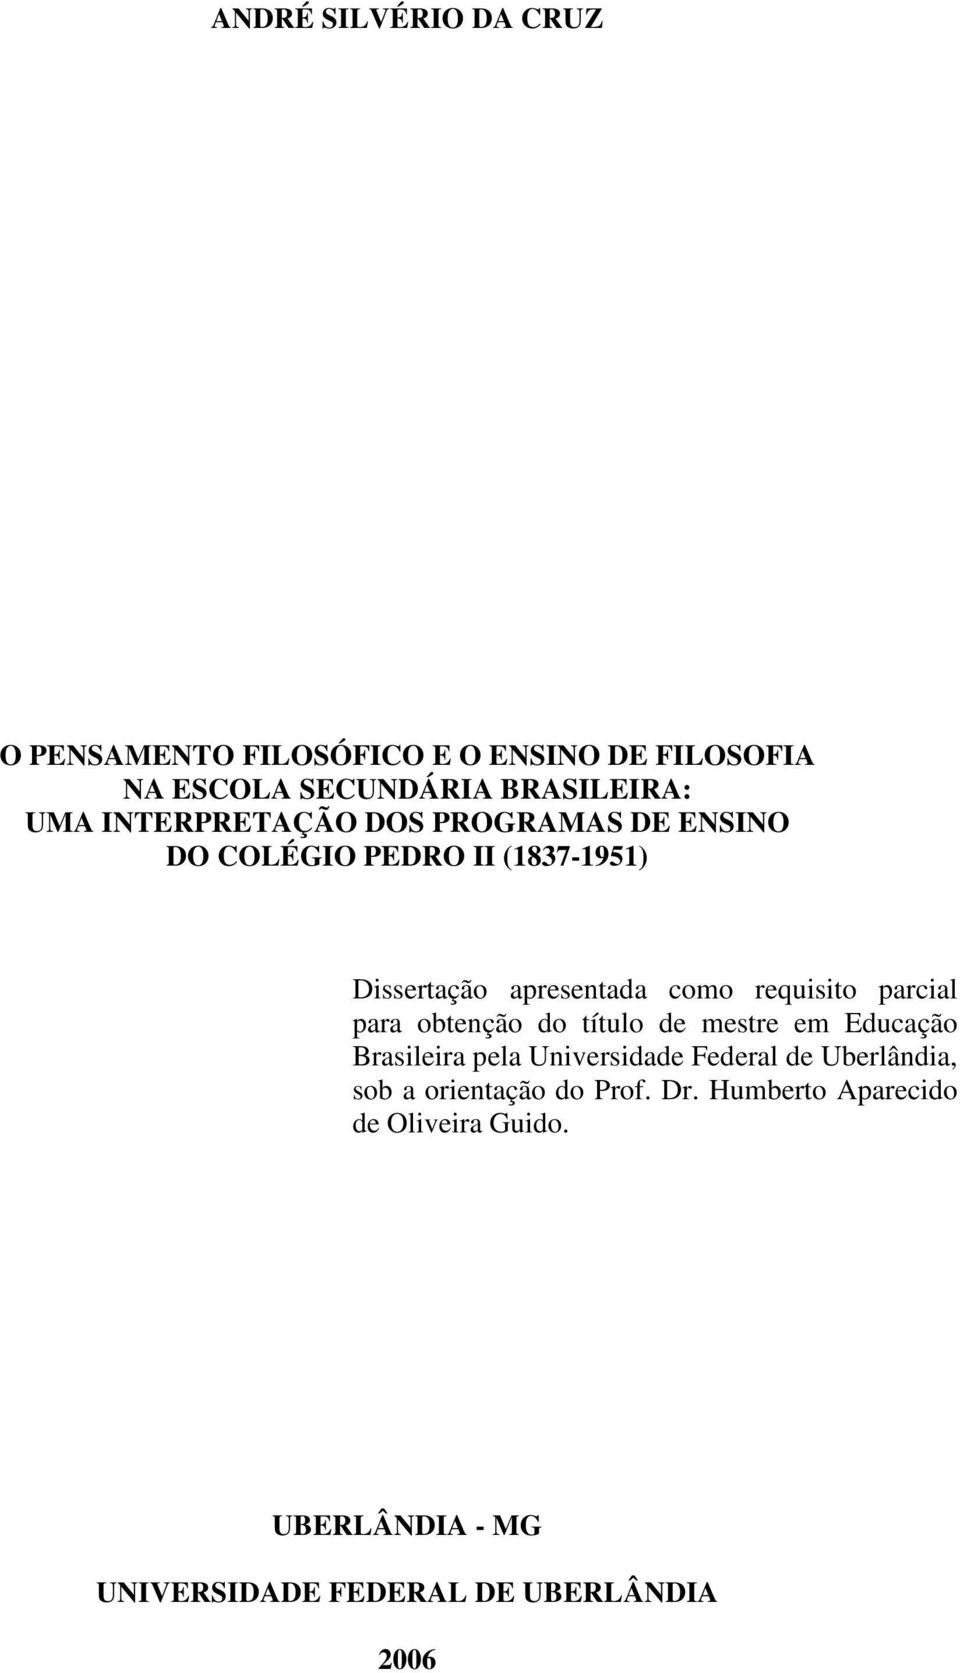 parcial para obtenção do título de mestre em Educação Brasileira pela Universidade Federal de Uberlândia, sob a